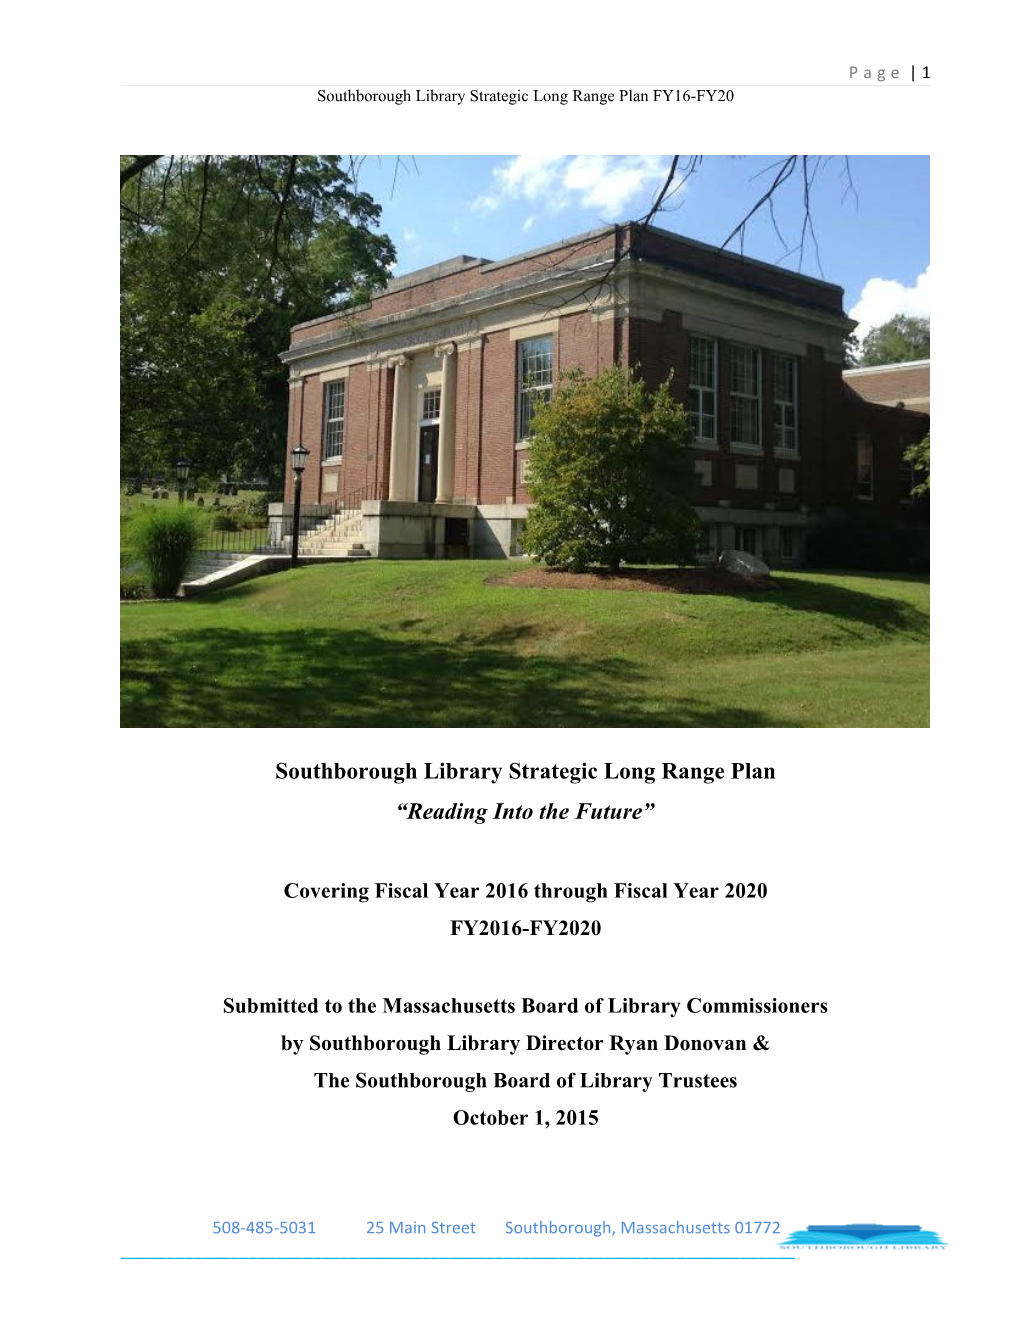 Southborough Library Strategic Long Range Plan